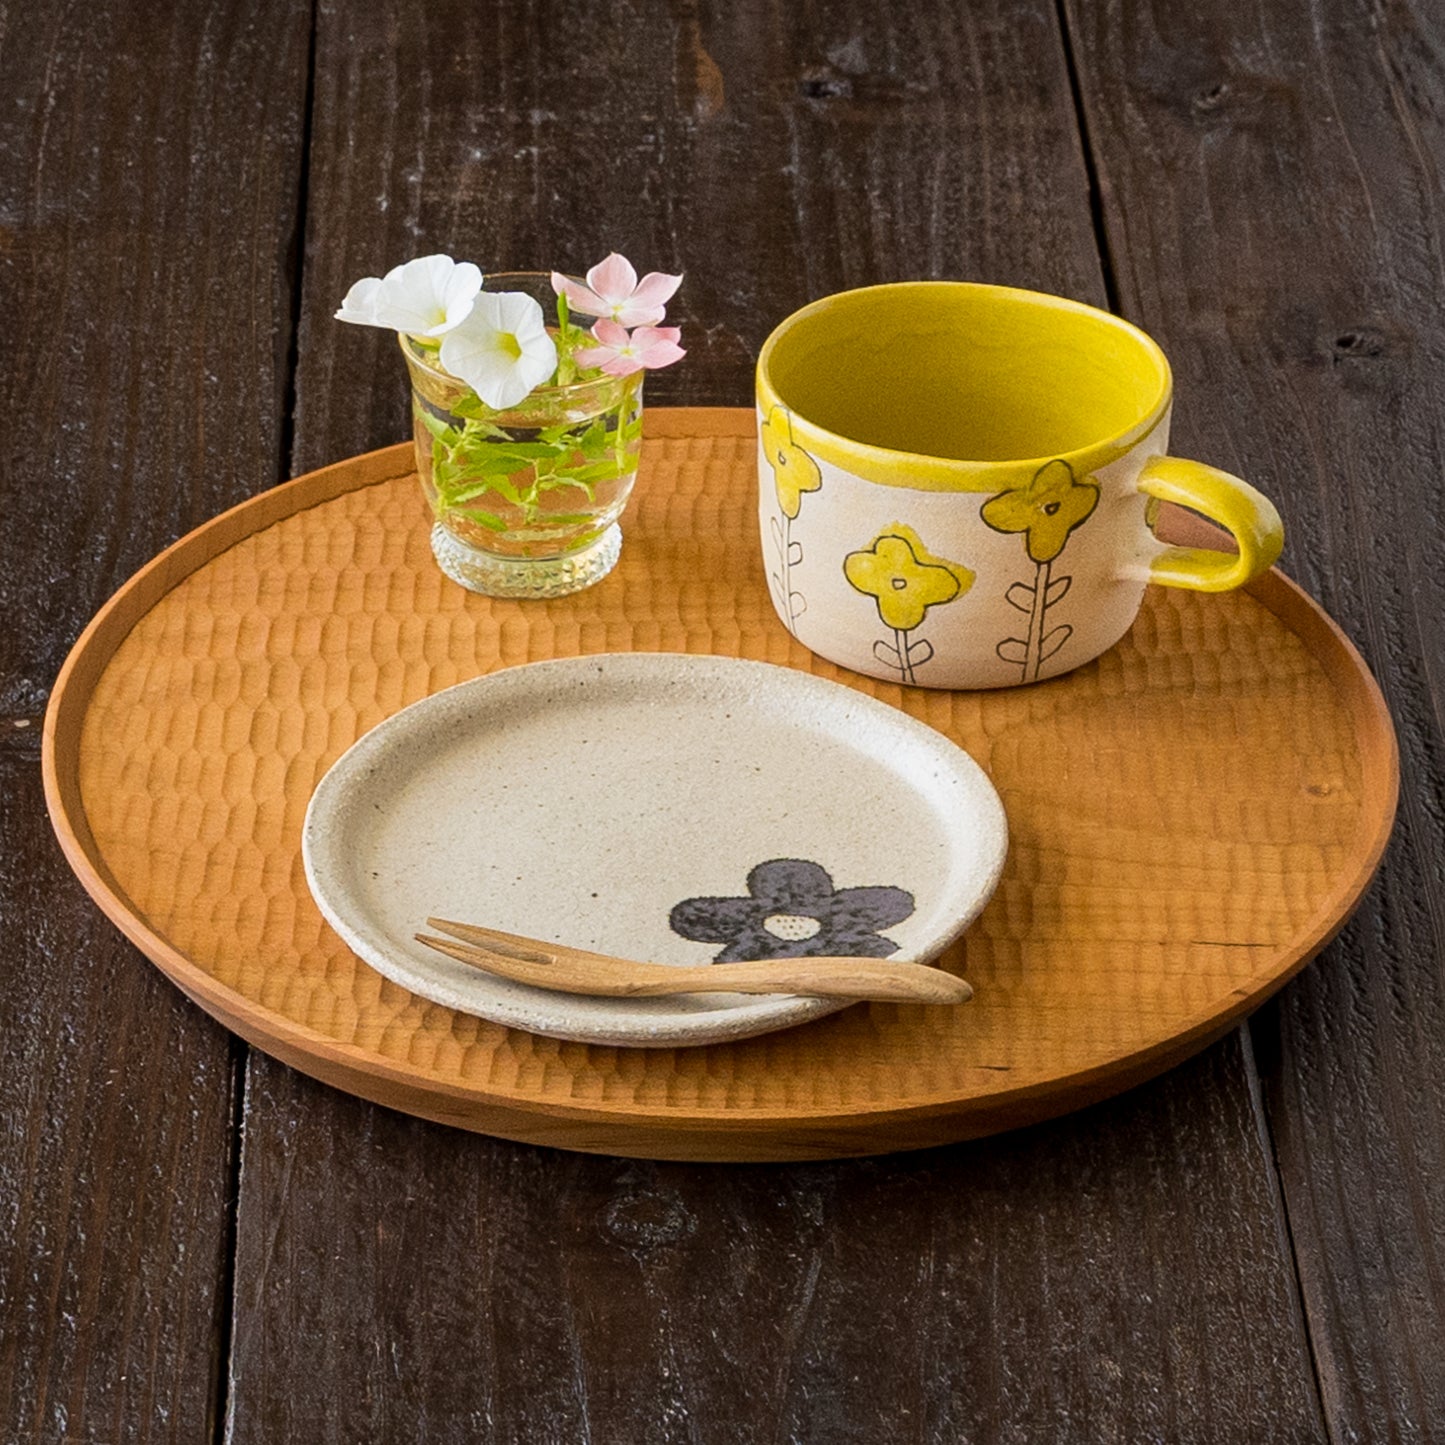 おうちカフェをゆっくり楽しめる岡村朝子さんの黄花のマグと丸皿